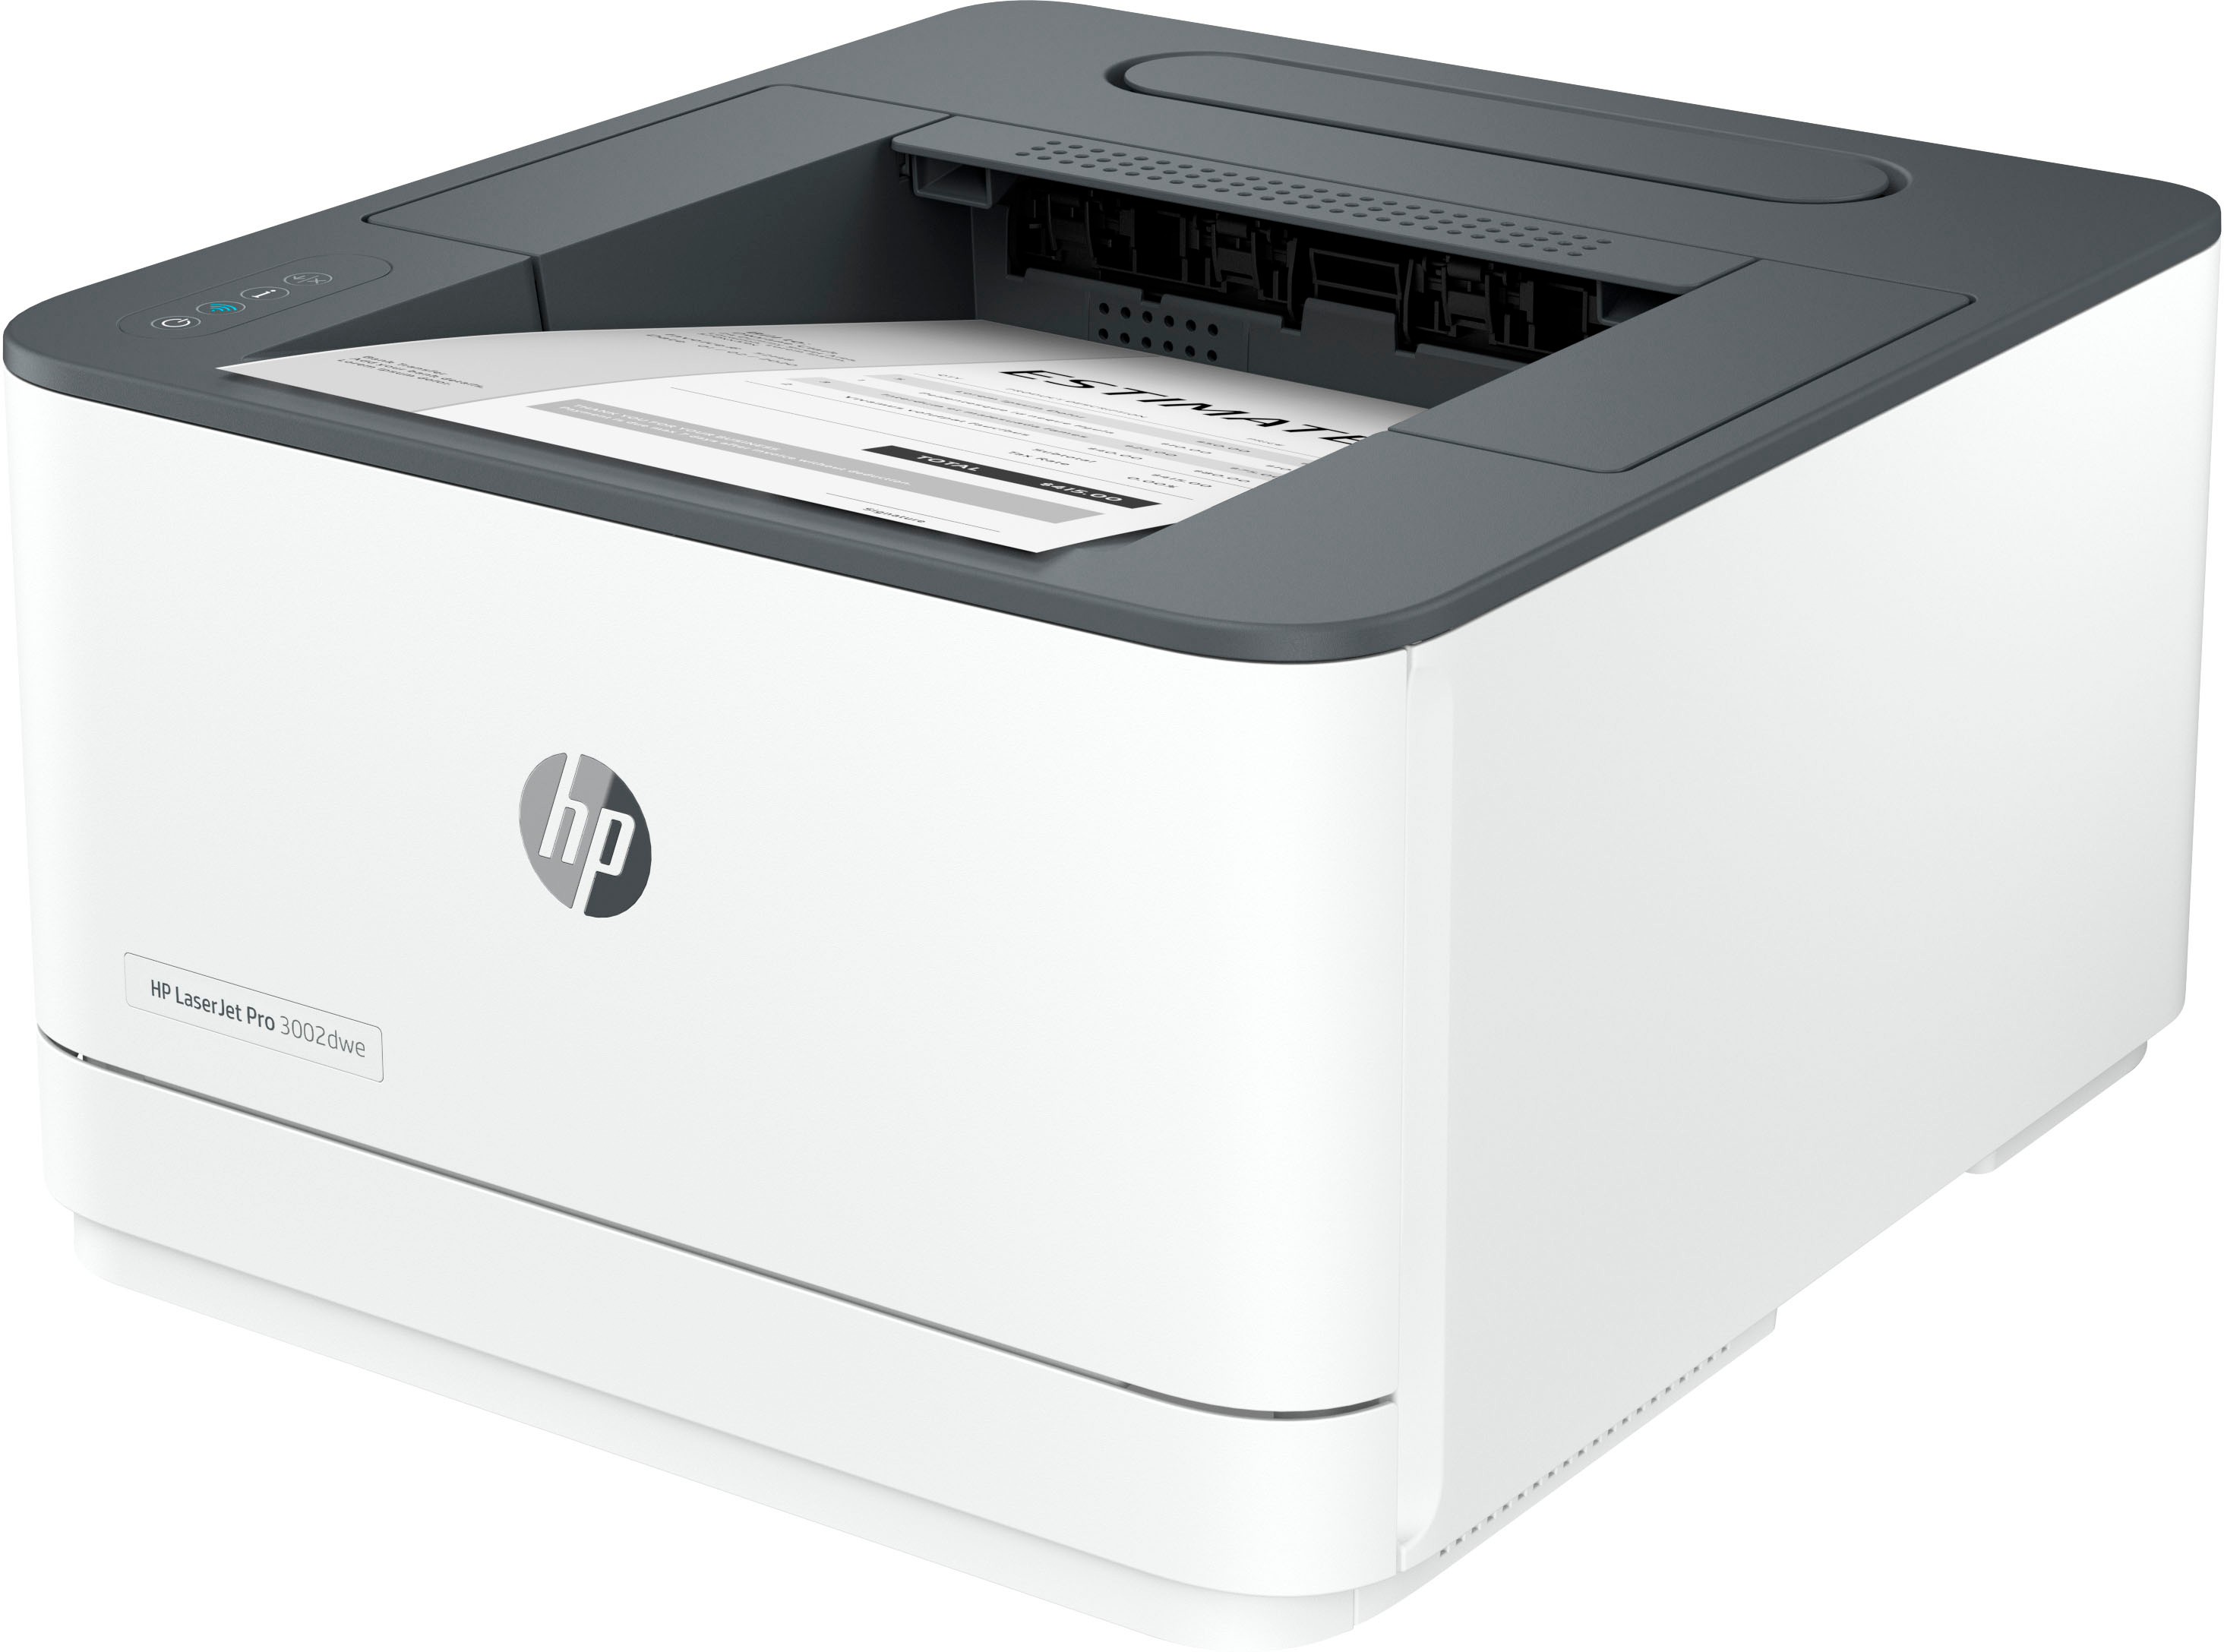 HP LaserJet Pro 3001dw Wireless Laser Printer